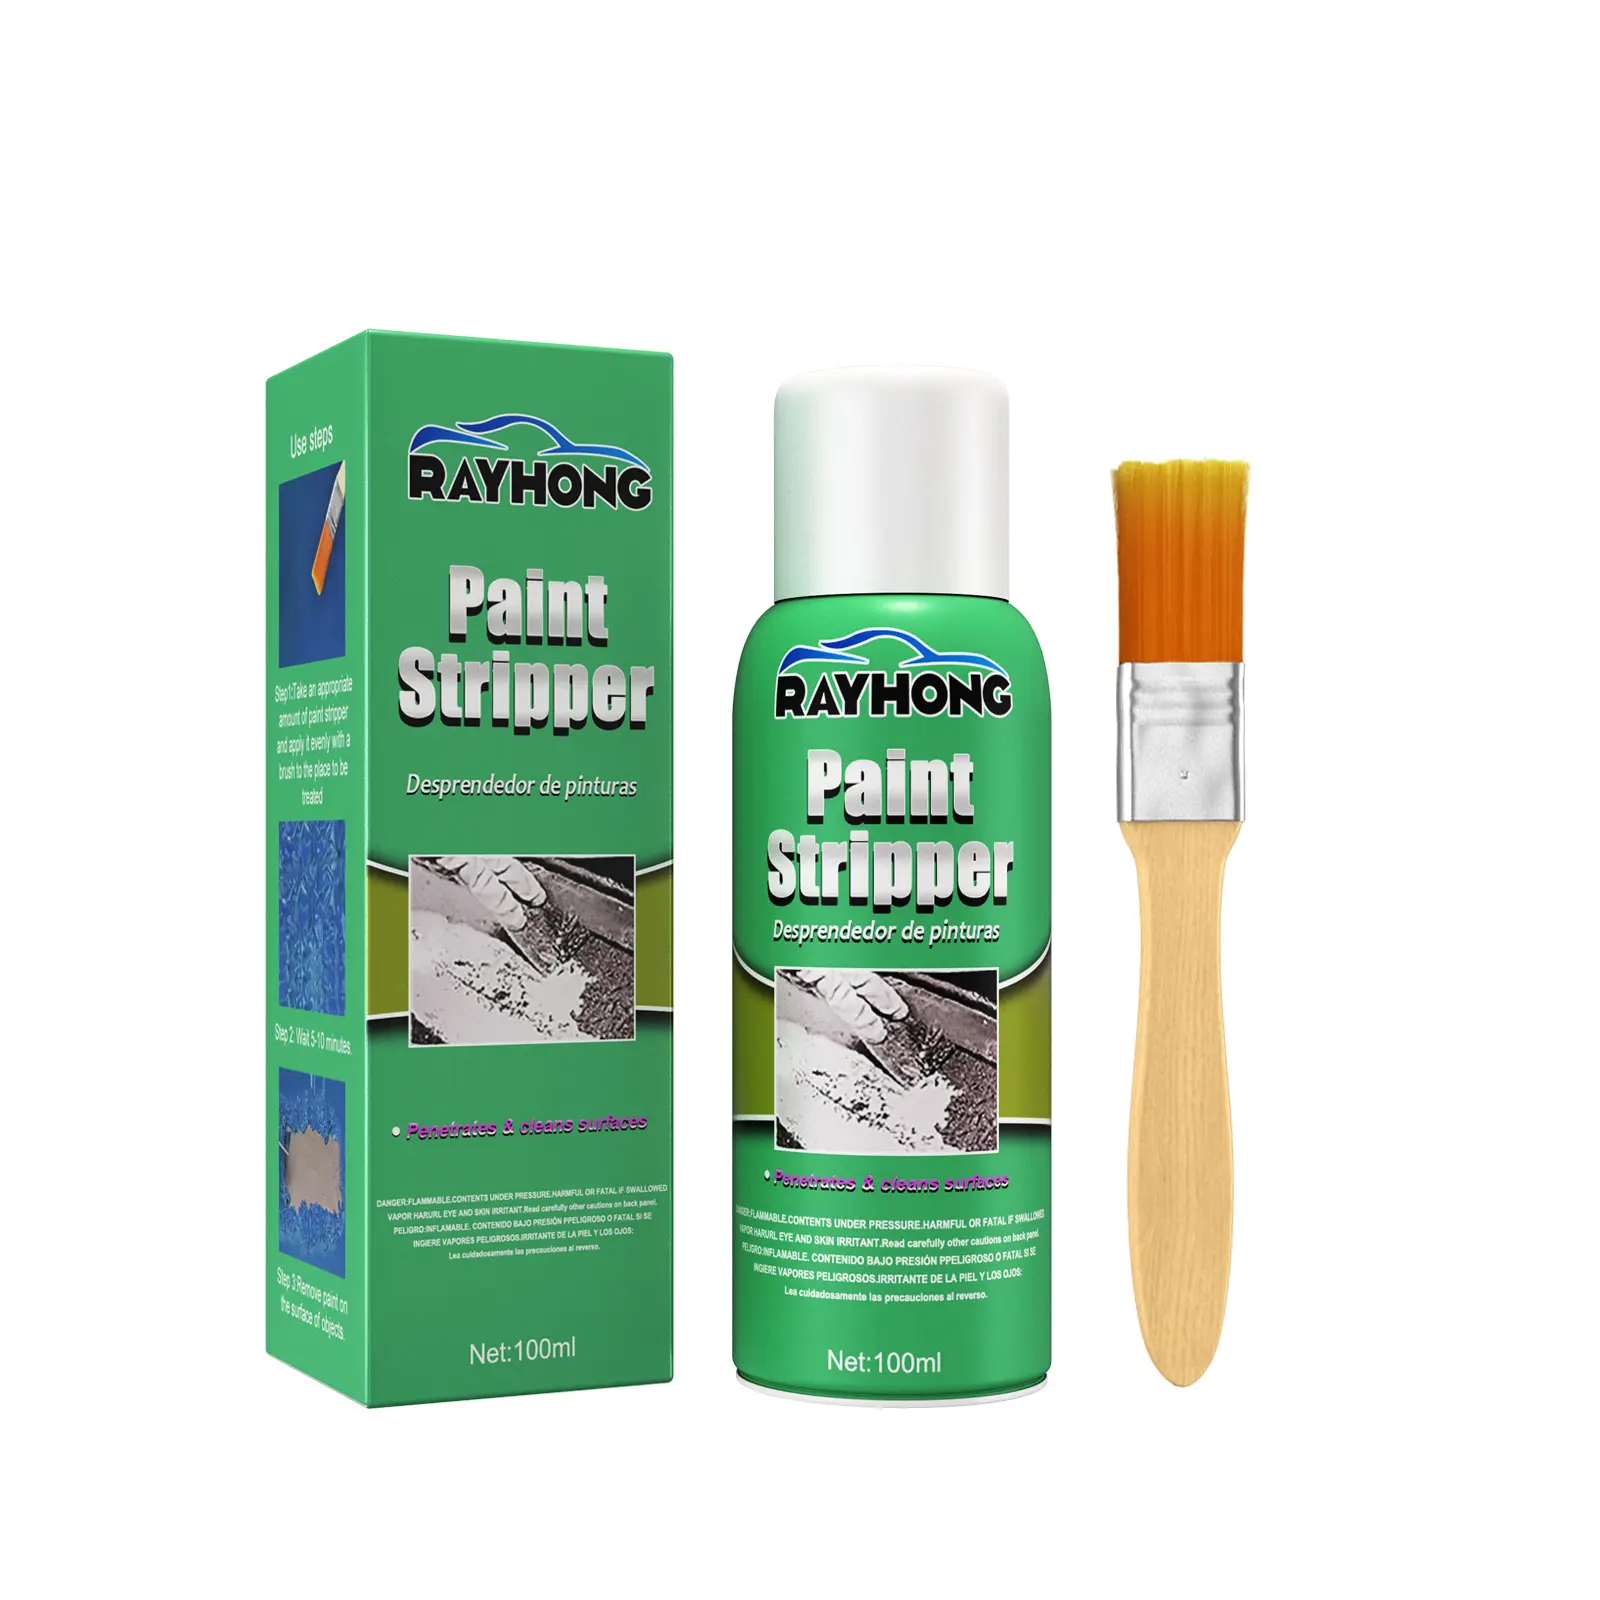 रेहोंग पेंट रिमूवर ऑटोमोटिव व्हील सीमलेस क्लीनिंग और पेंट रिमूवर धातु की सतहों से कुशल पेंट हटाता है